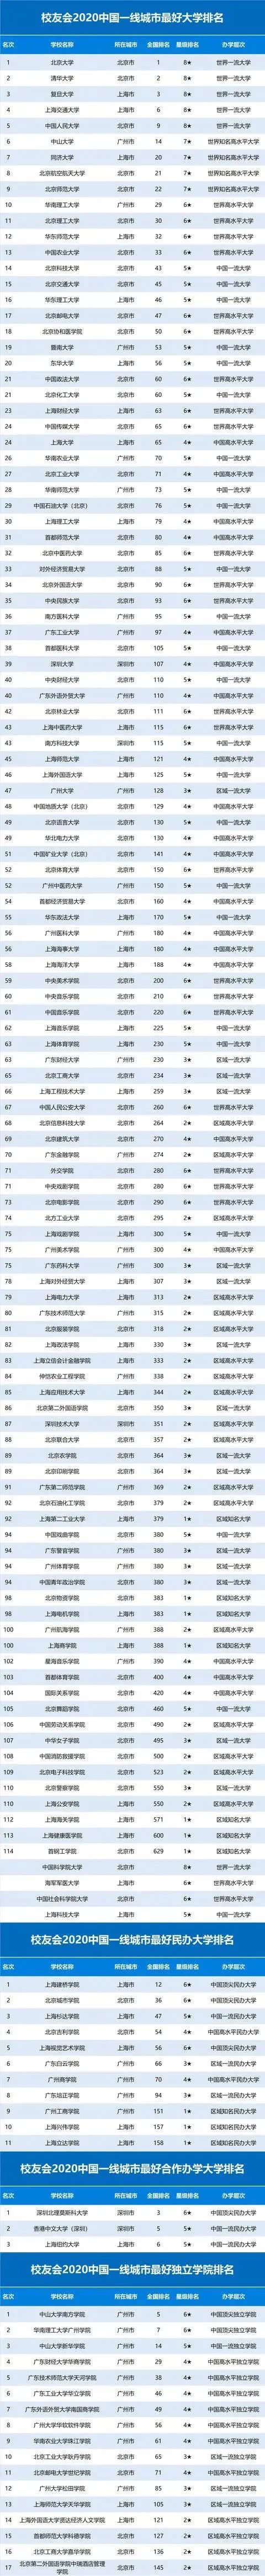 2020中国城市排名:2019-2020年中国智慧城市发展分析报告